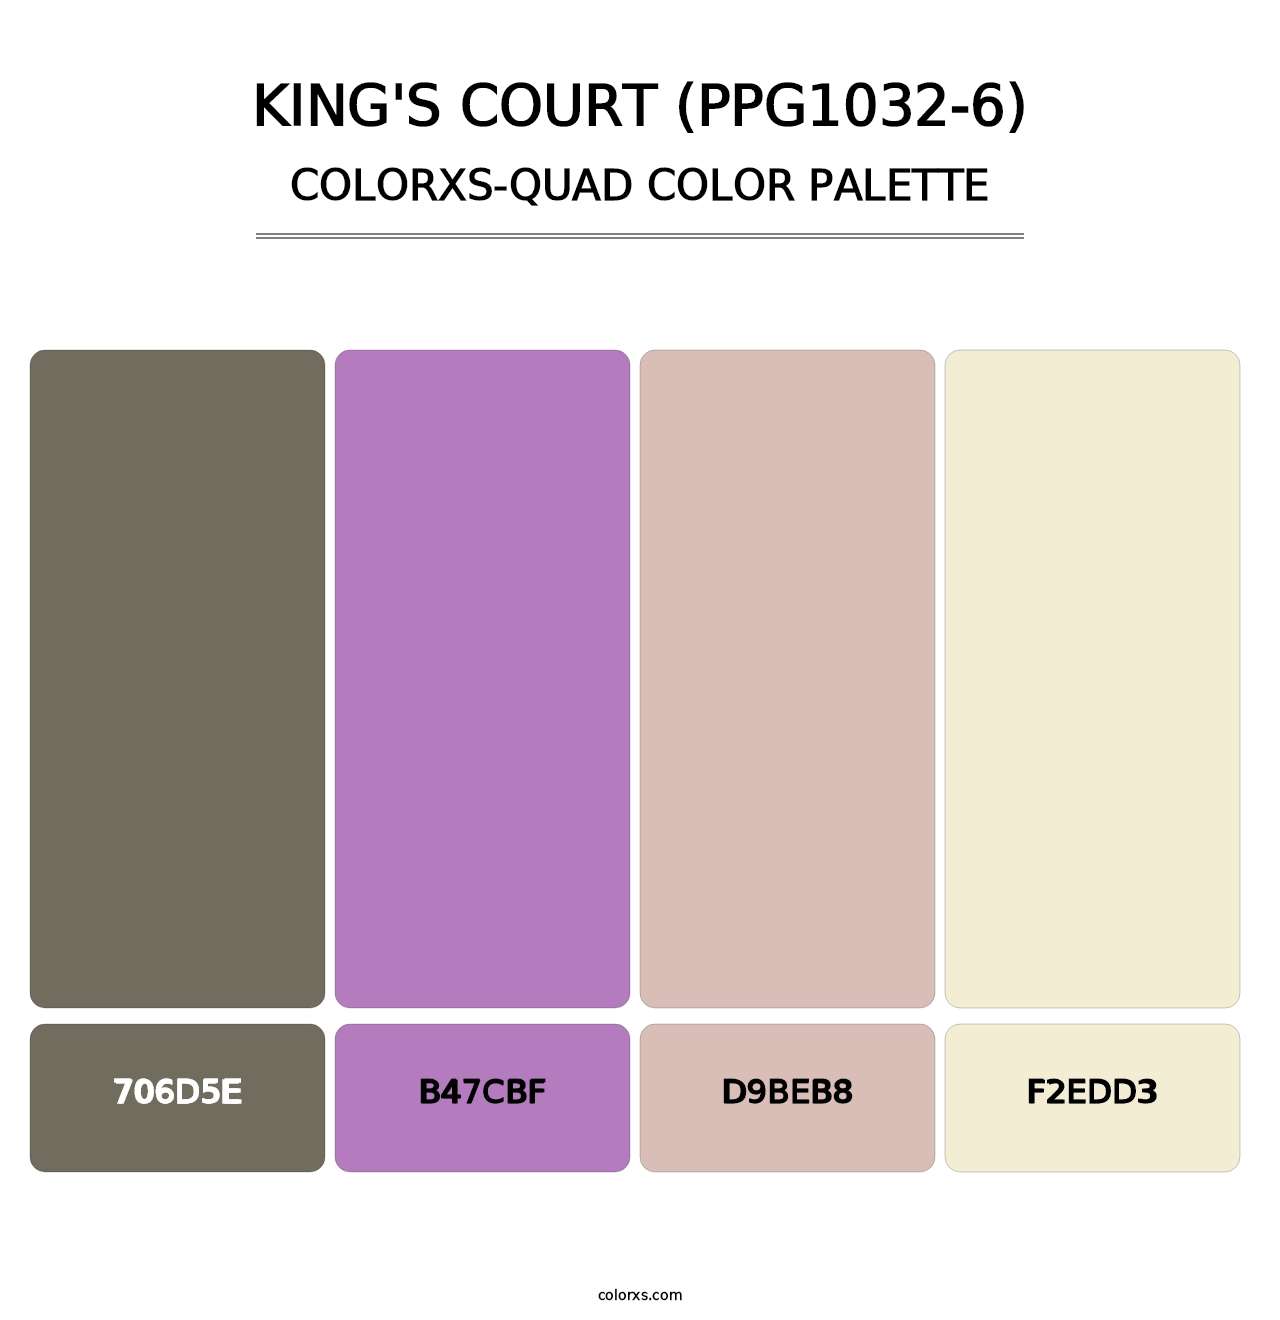 King's Court (PPG1032-6) - Colorxs Quad Palette